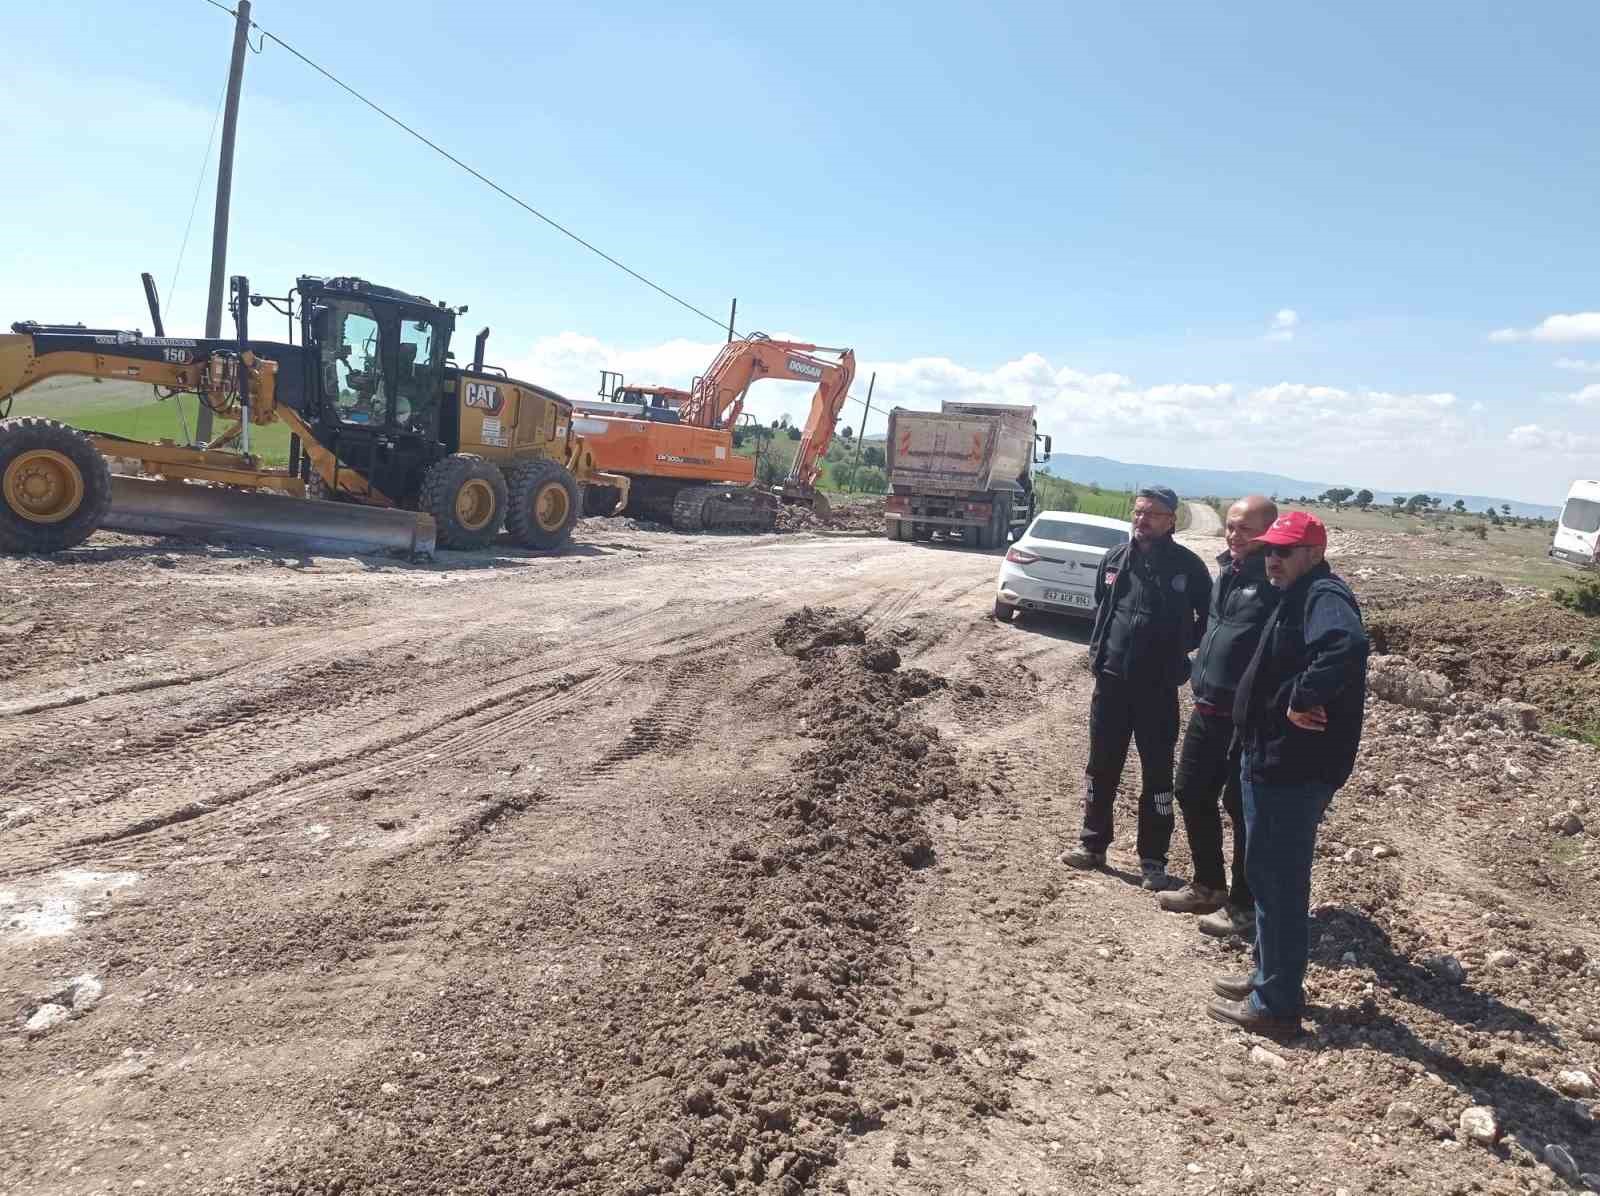 Çavdarhisar Yenicearmutçuk-İlcikören köyleri arasında yol onarım bakım çalışması